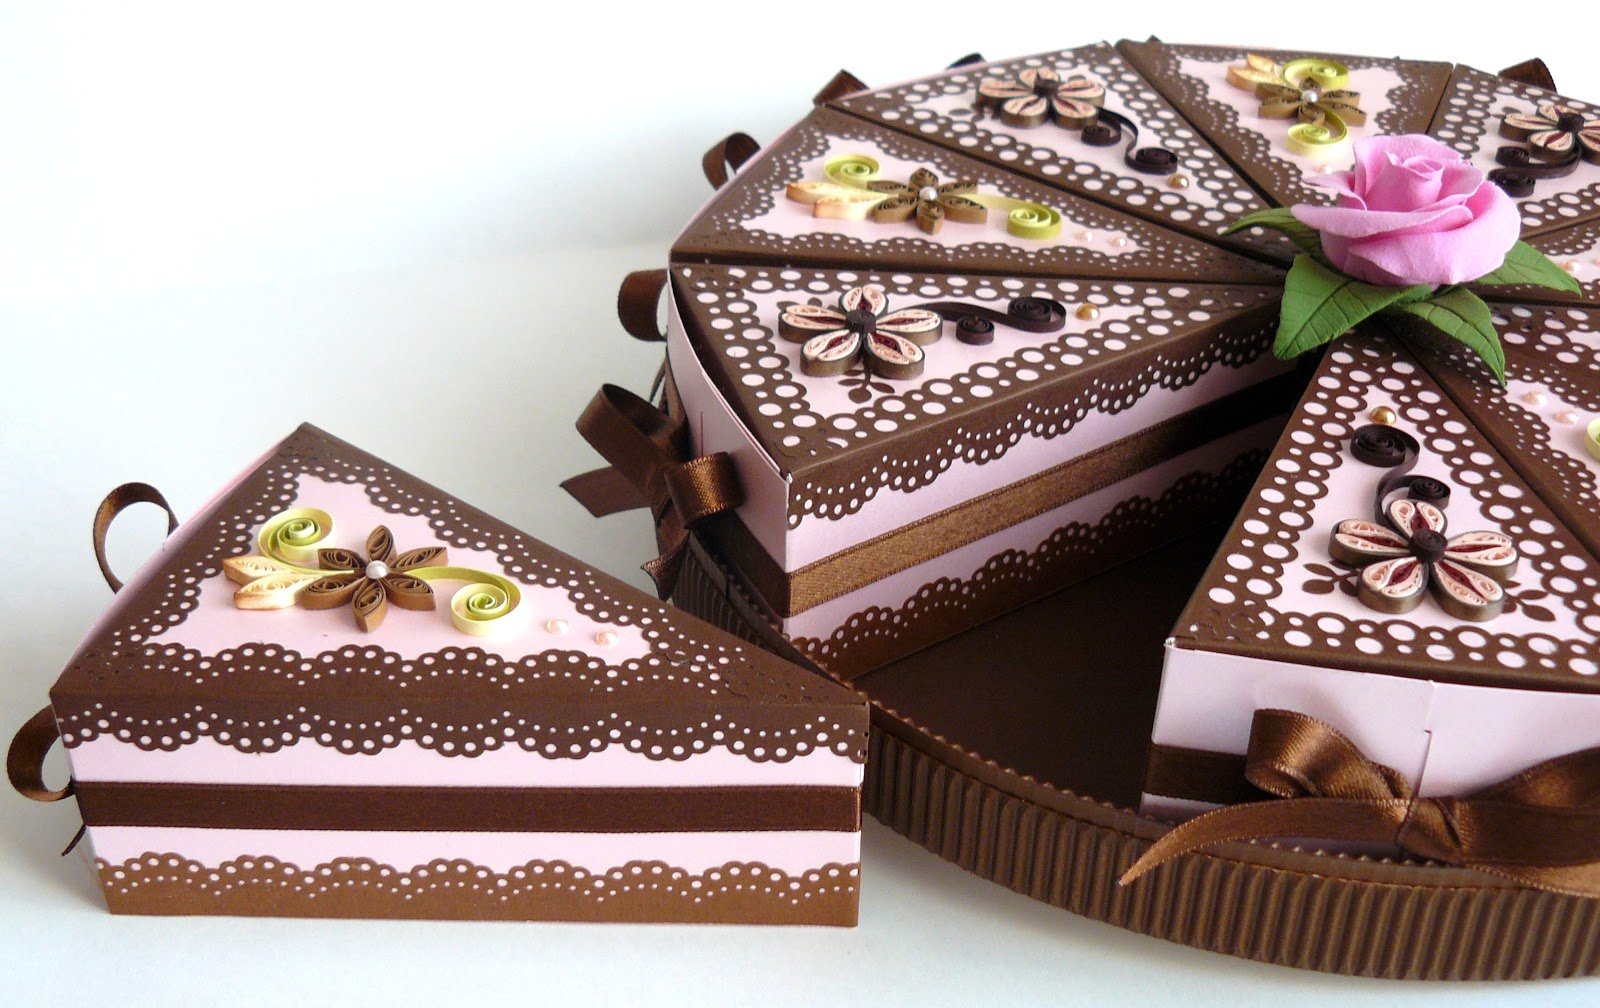 бонбоньерки в виде кусочка торта 5 | Бонбоньерки, Шаблоны, Шаблон коробки